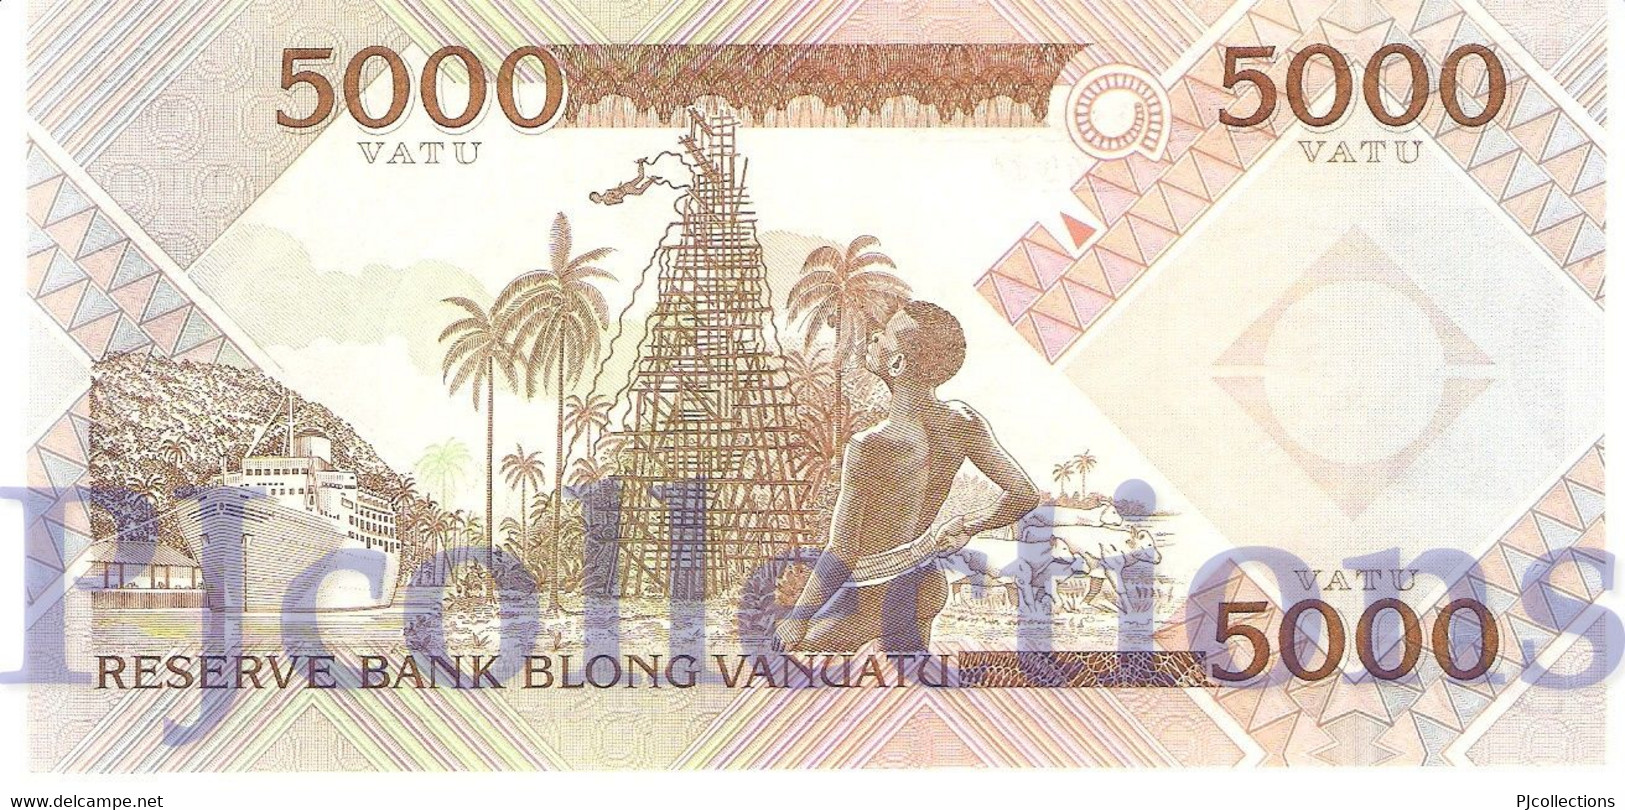 VANUATU 5000 VATU 2006 PICK 15 UNC LOW SERIAL NUMBER "BB000065" - Vanuatu